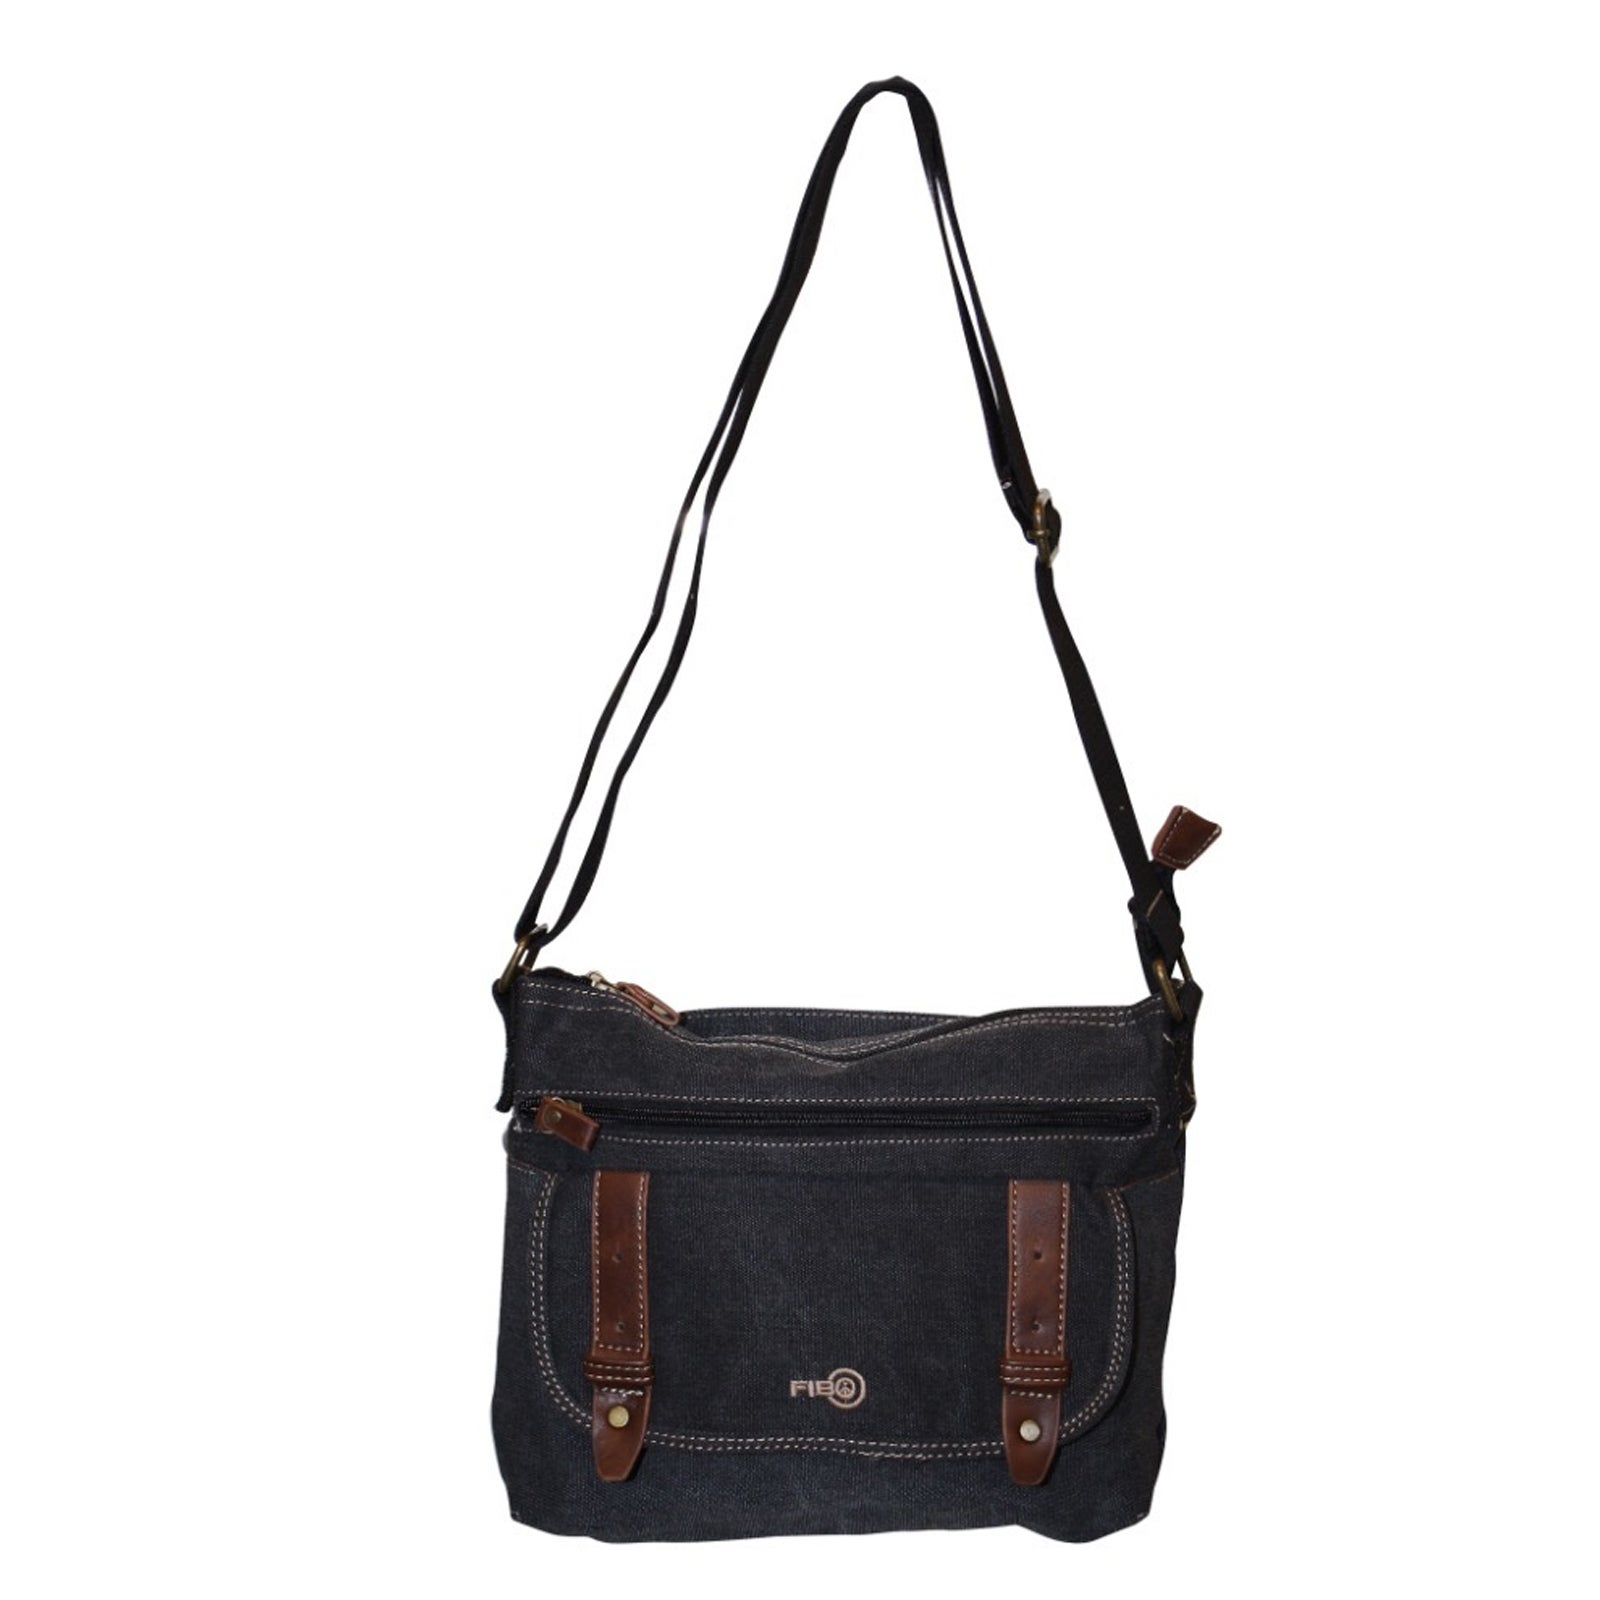 FIB Canvas Messenger Bag w Adjustable Shoulder Strap Travel - Black | Buy Messenger Bags ...